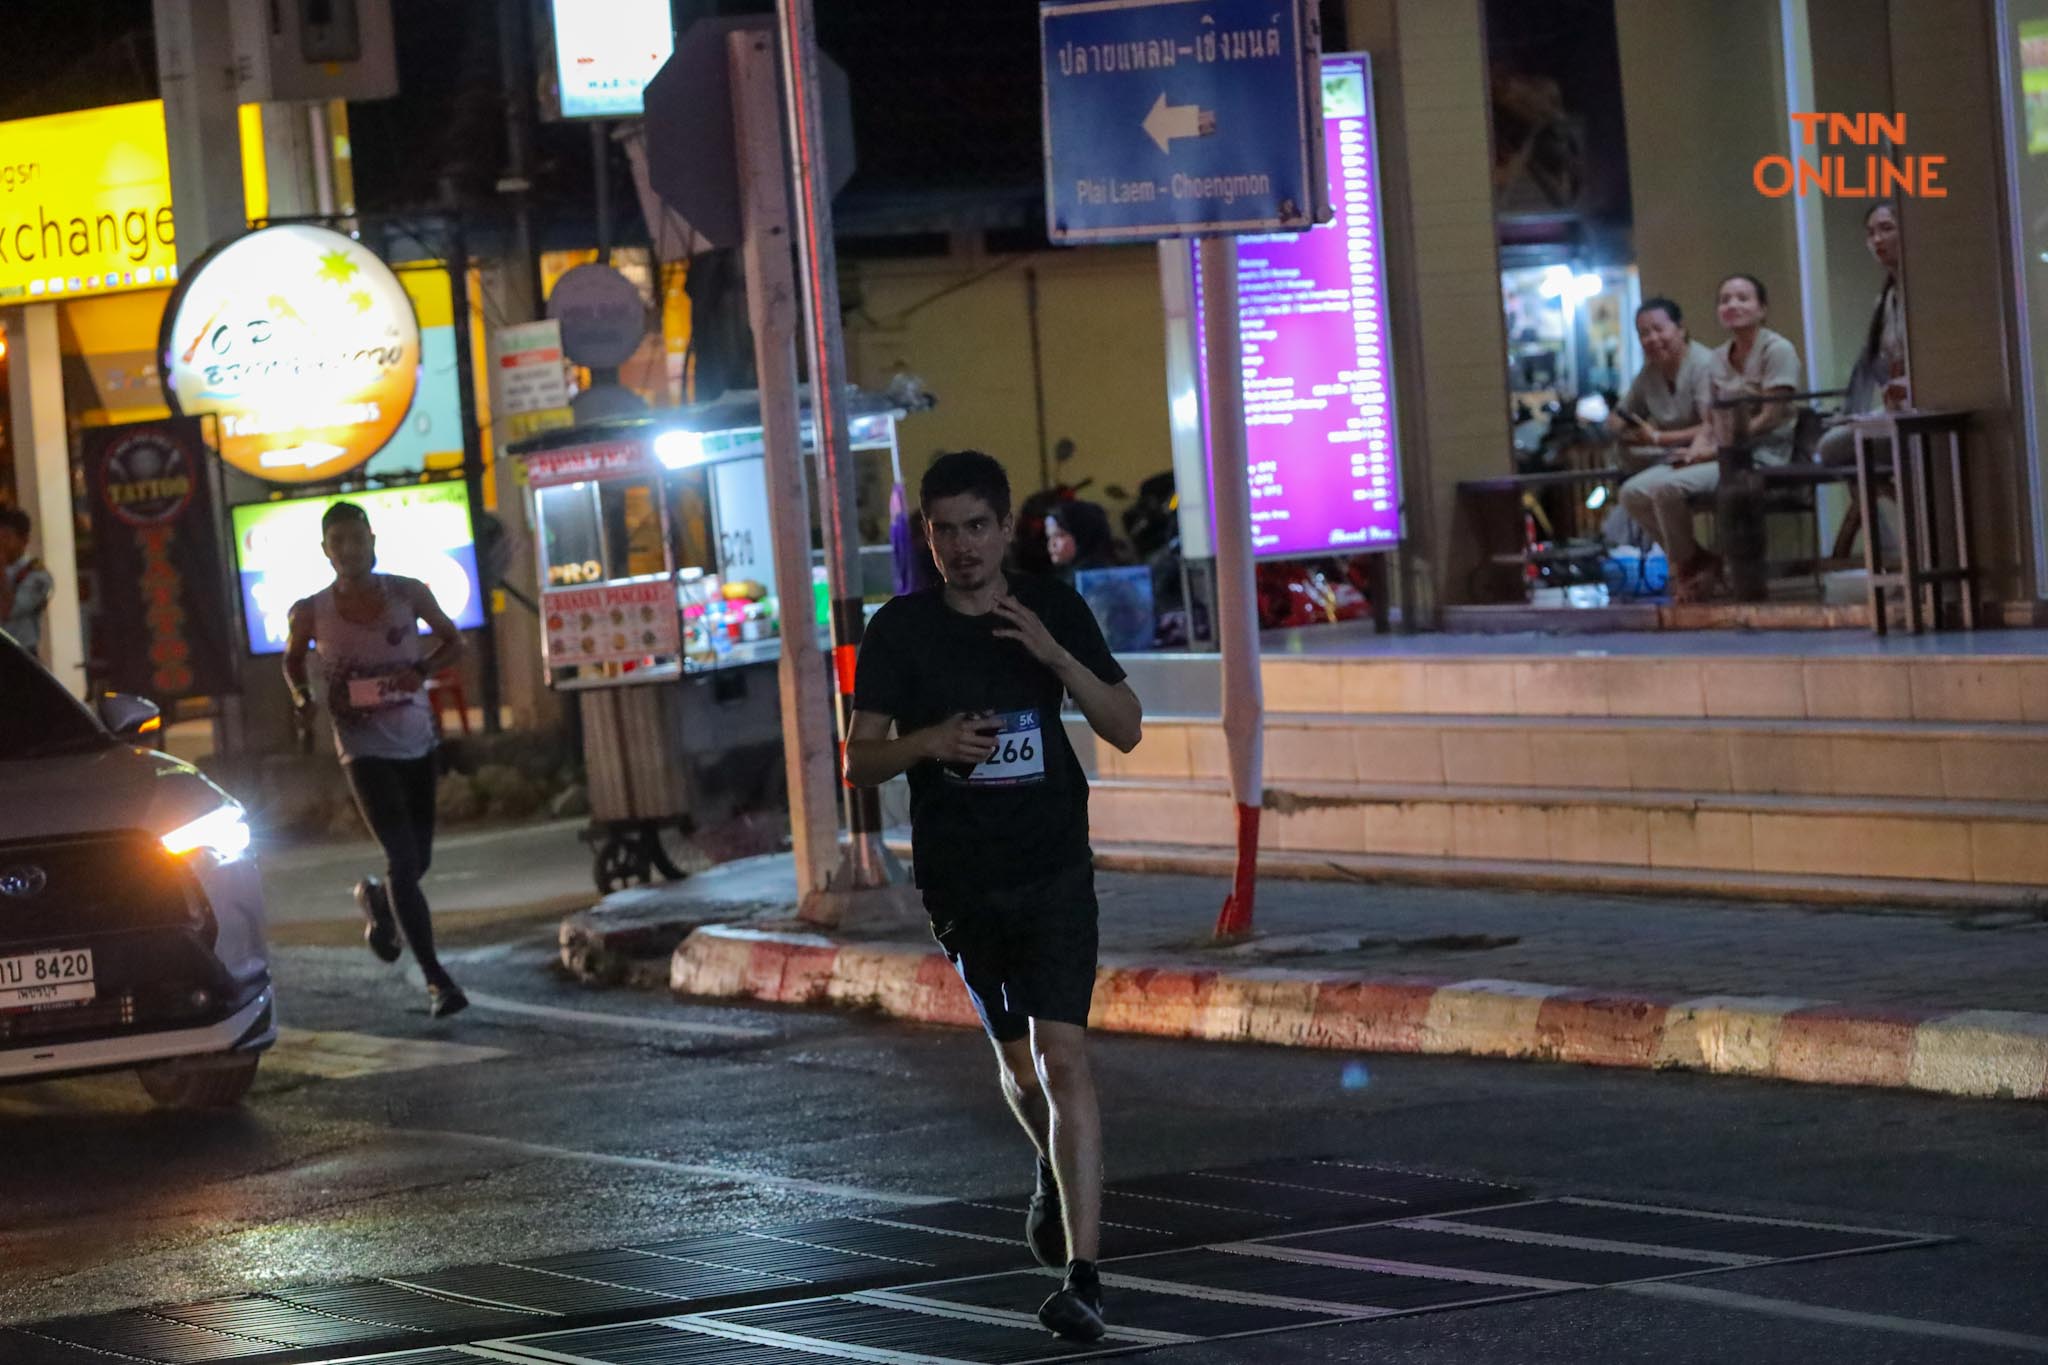 Samui Neon Run 2023 นักวิ่งทั่วประเทศเดินทางร่วมงานกว่า 500 คน